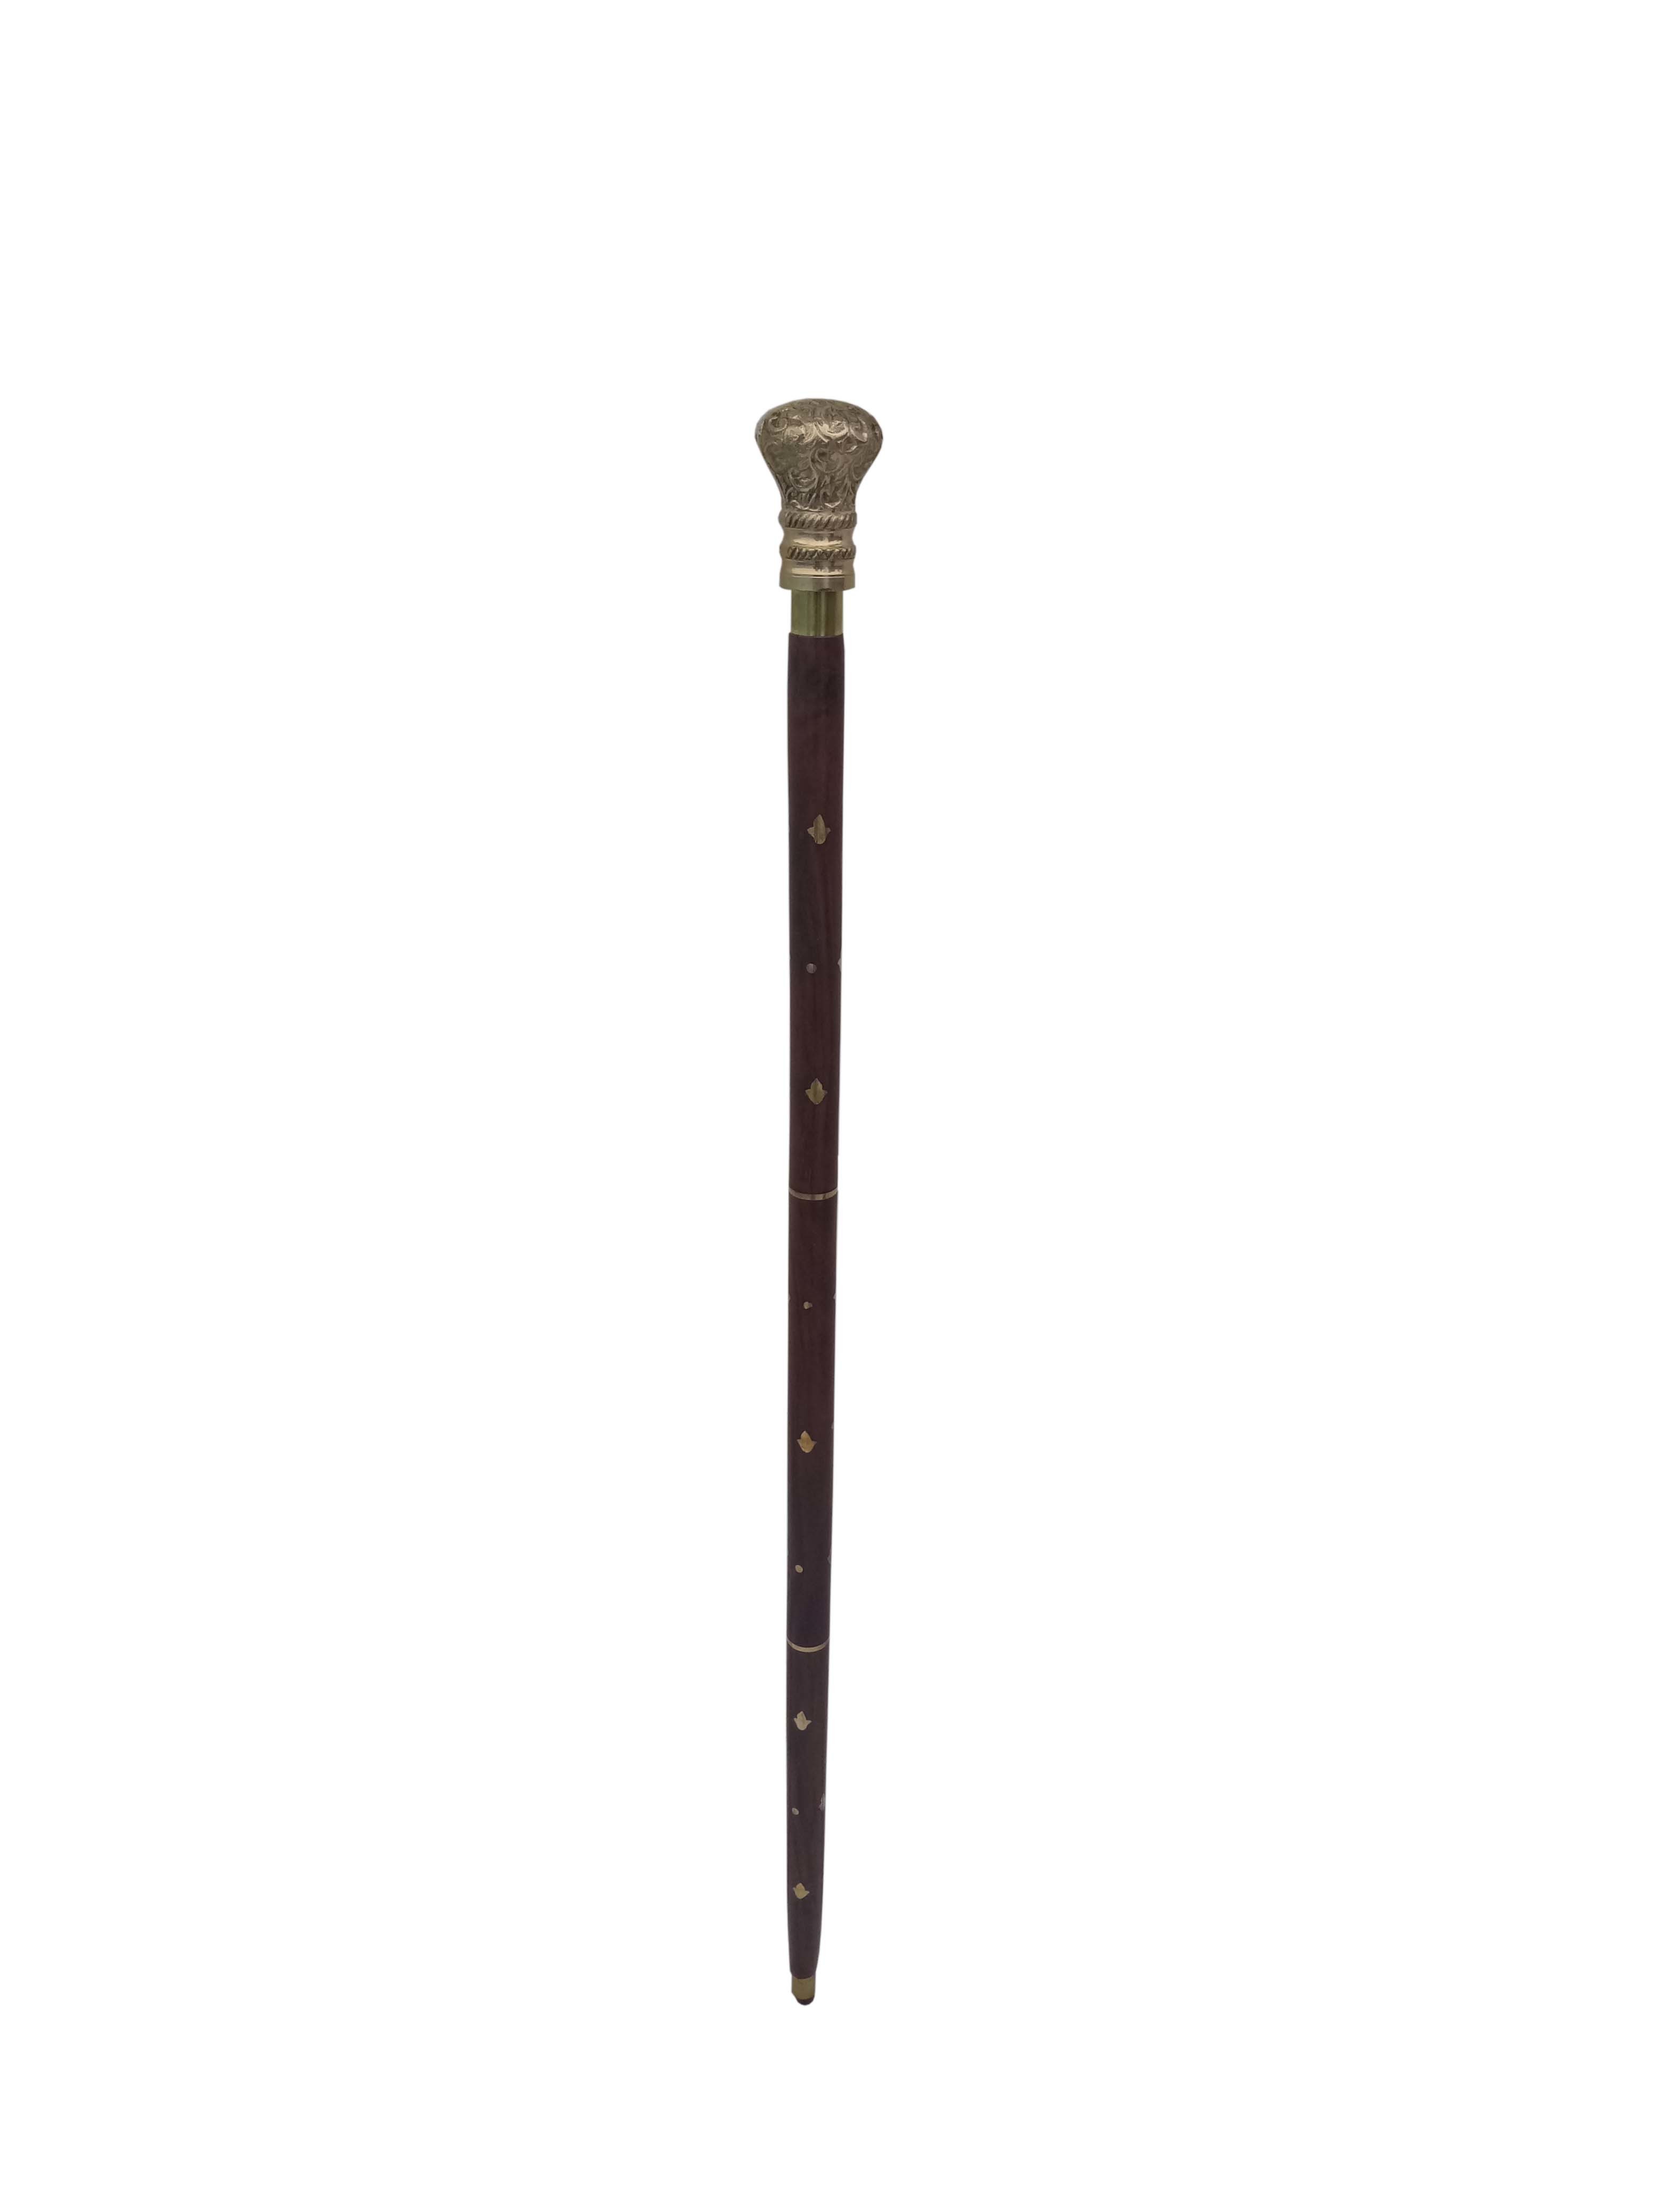 Brass designer Round Handle Wooden walking stick